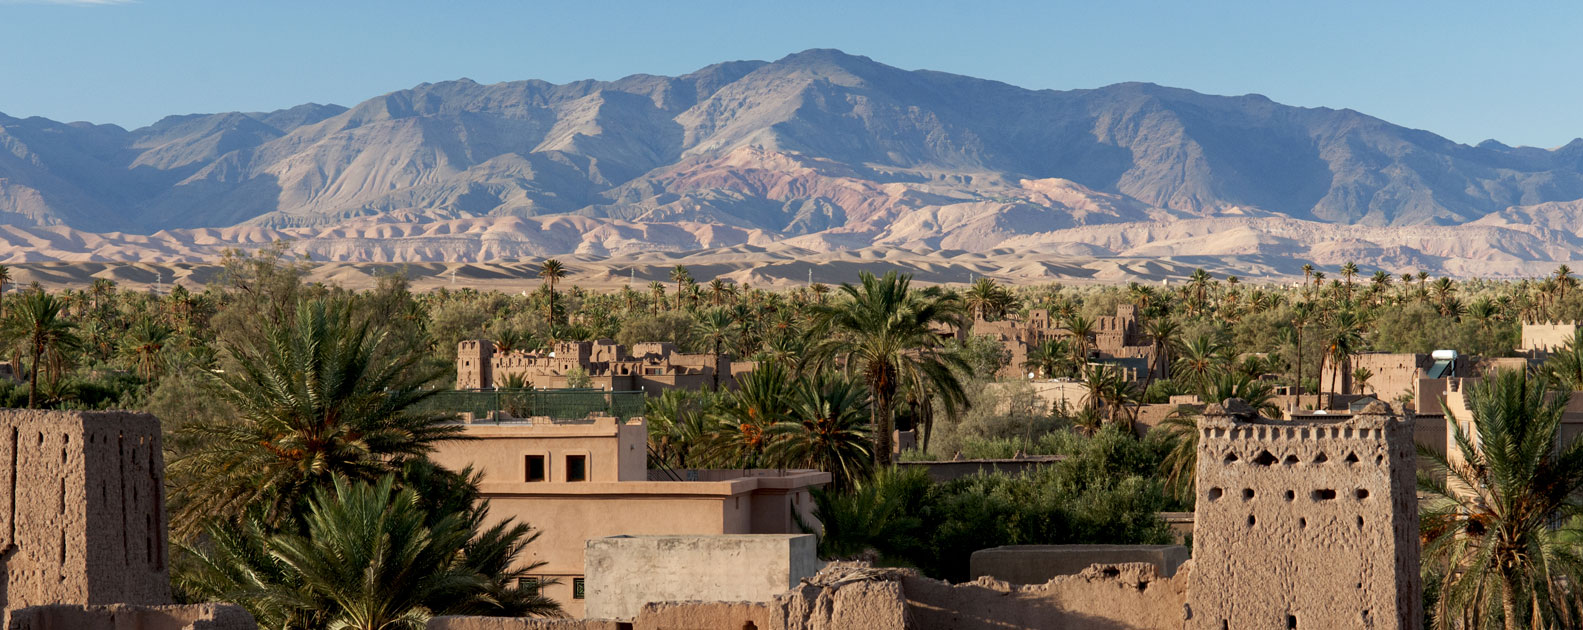 Ouarzazate-Zagoura-Tinghir, Um set de filmagens imperdível